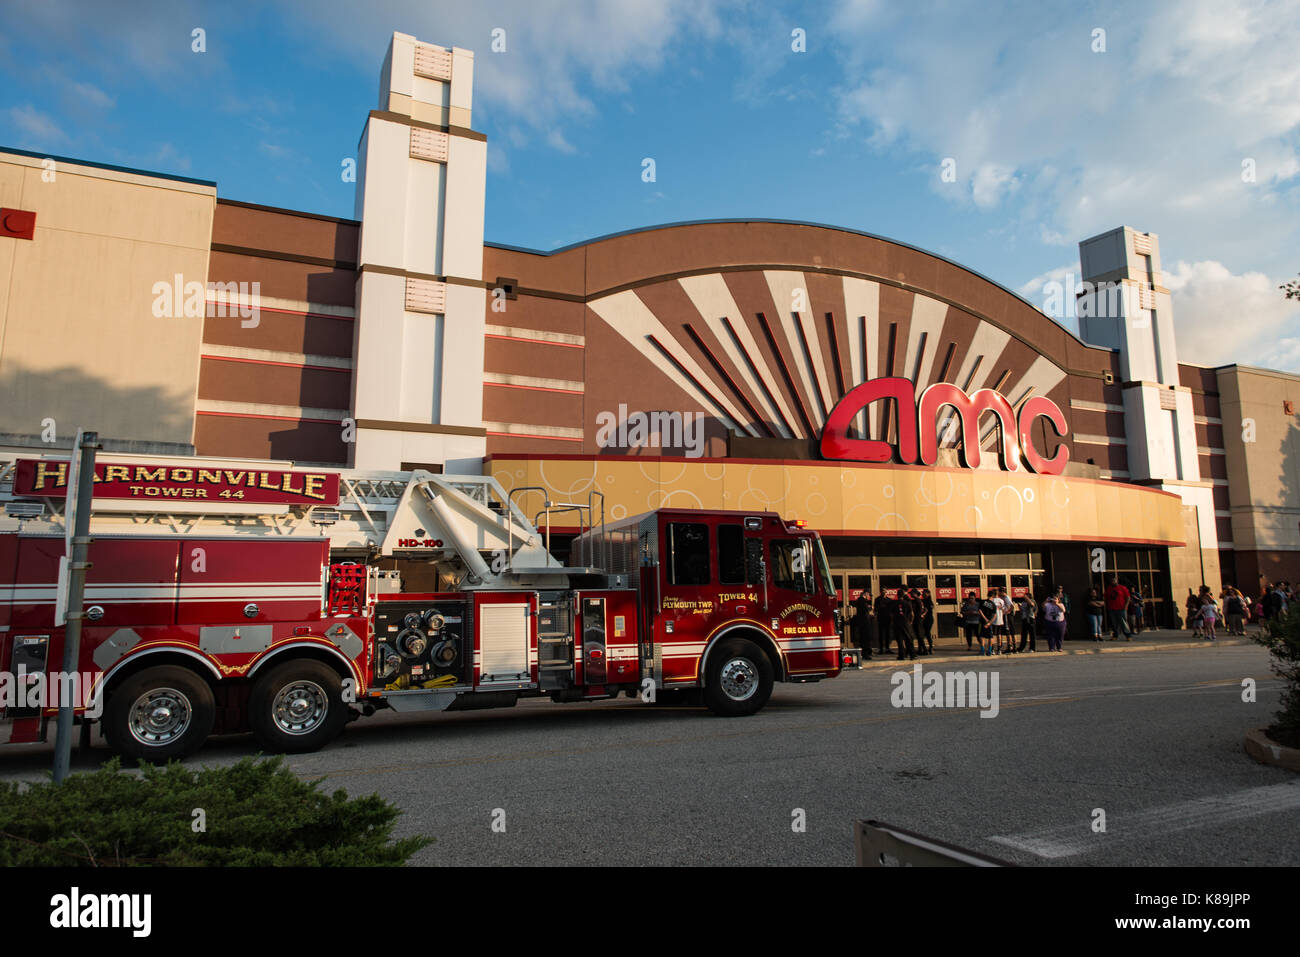 New York, USA. 18 septembre, 2017. harmonville fire company tower 44 répond au feu à l'alarme du cinéma amc lors d'une visualisation avancée du nouveau film ninjango lego. crédit : kelleher photography/Alamy live news Banque D'Images